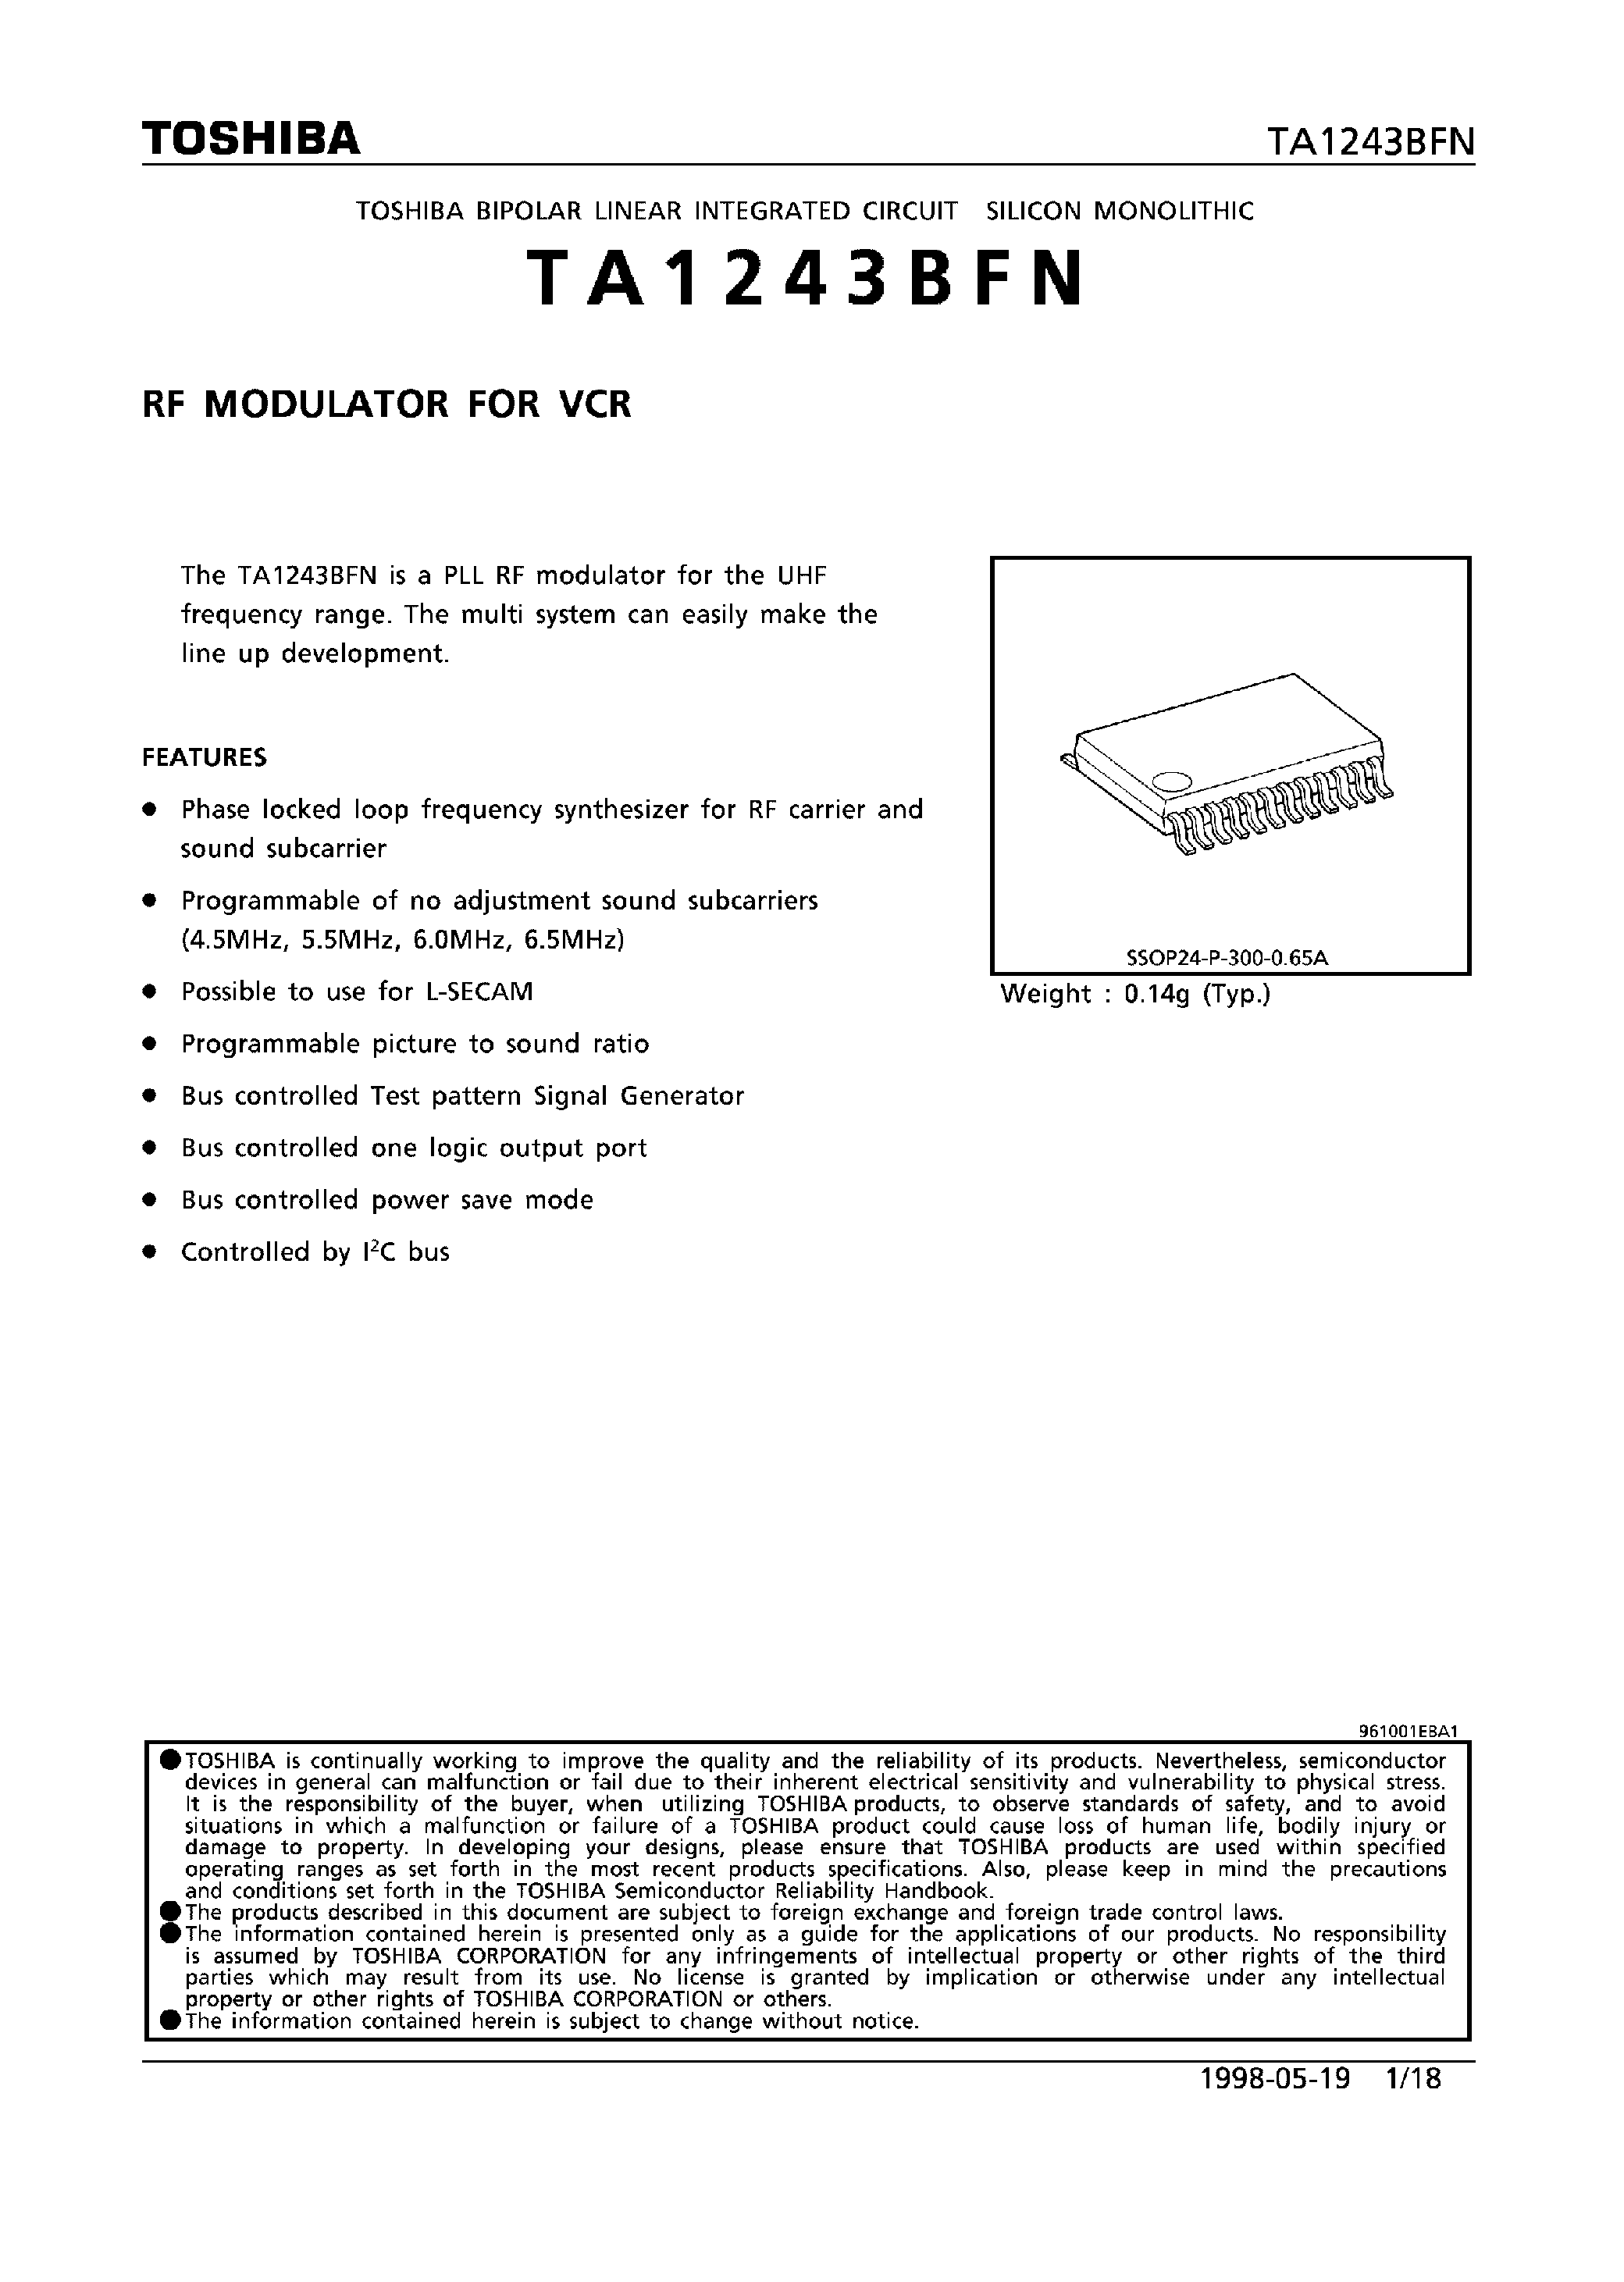 Datasheet TA1243BFN - RF MODULATOR FOR VCR page 1